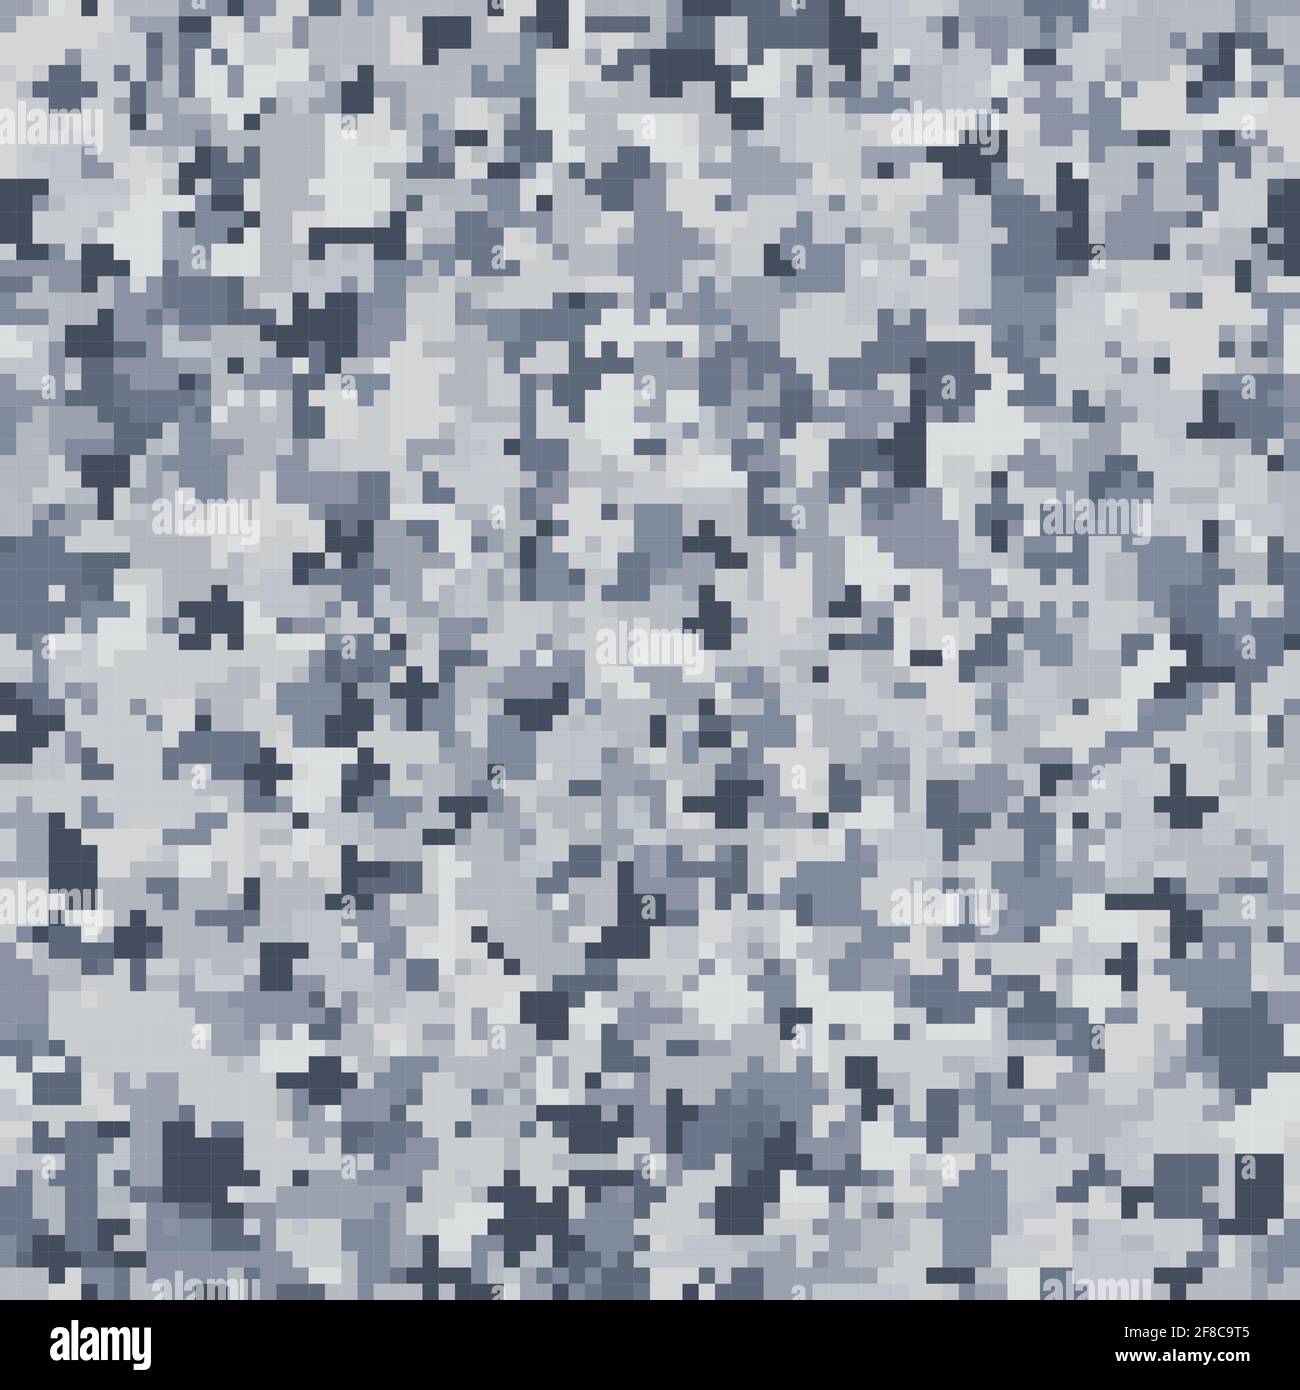 La texture transparente de camouflage militaire. Abstract vector illustration de l'armée Illustration de Vecteur